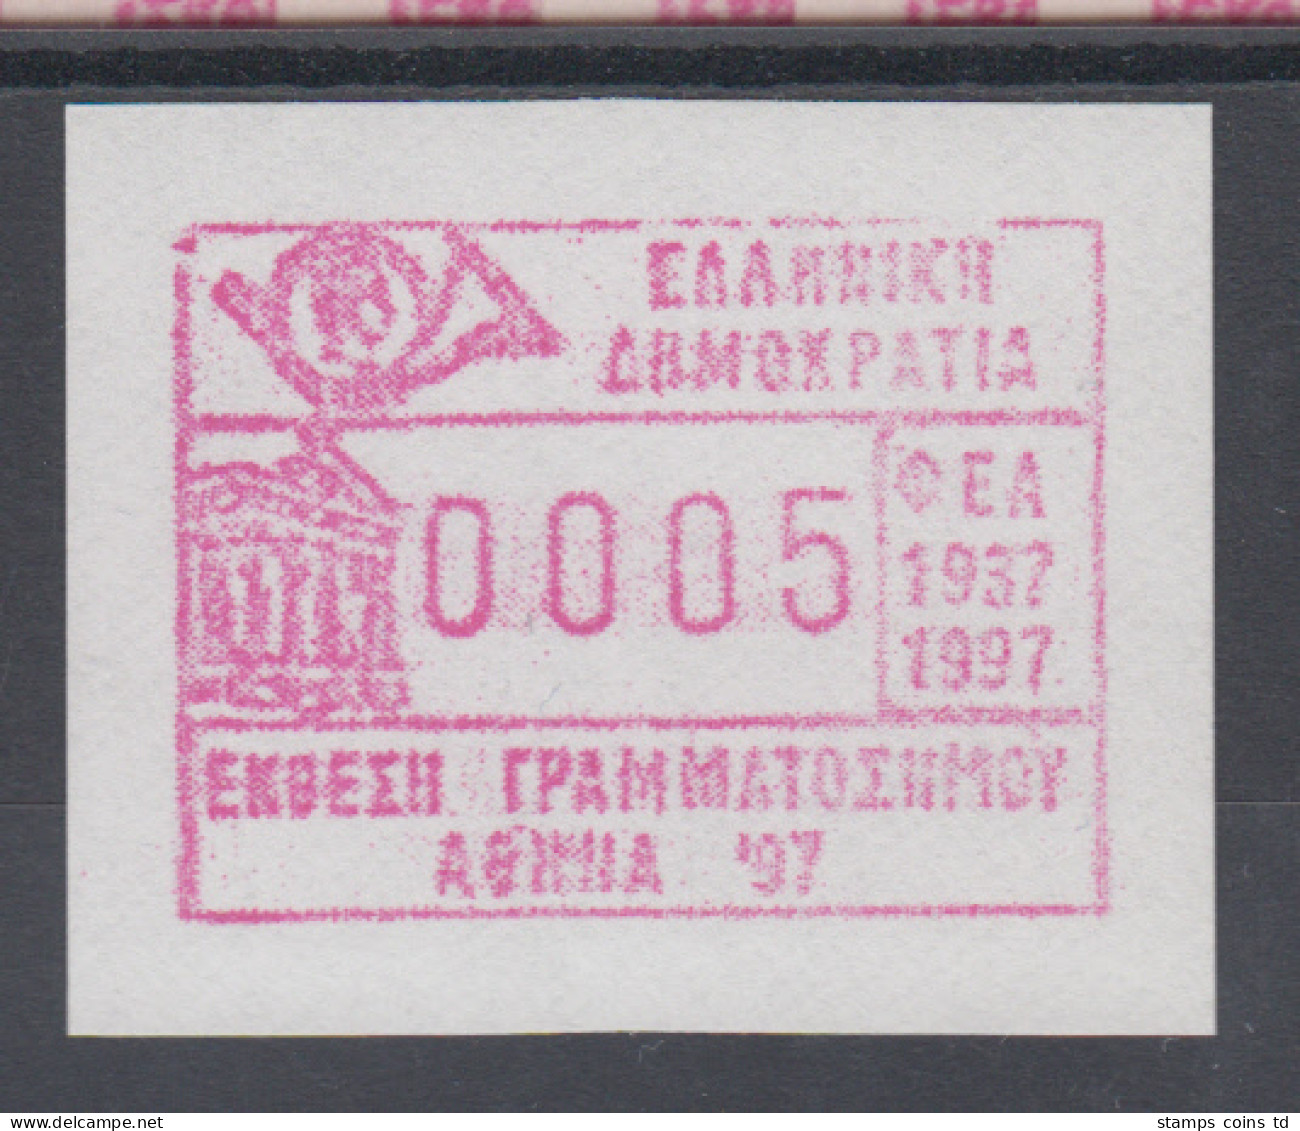 Griechenland: Frama-ATM Sonderausgabe ATHEN'97  Mi.-Nr. 17.1 Y ** - Vignette [ATM]